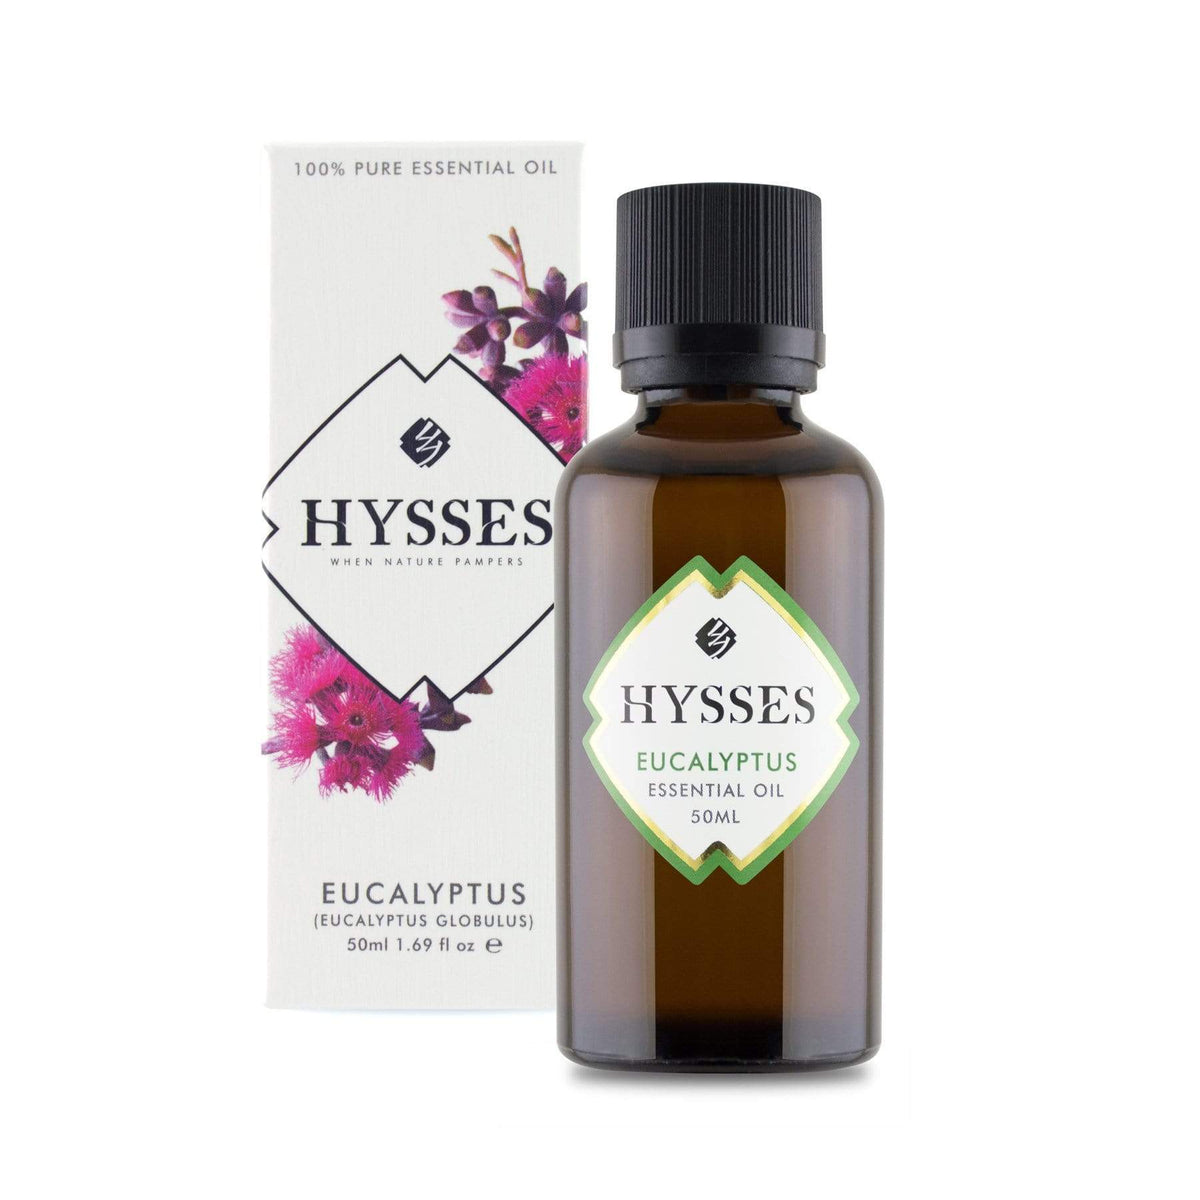 Hysses Essential Oil 50ml Essential Oil Eucalyptus